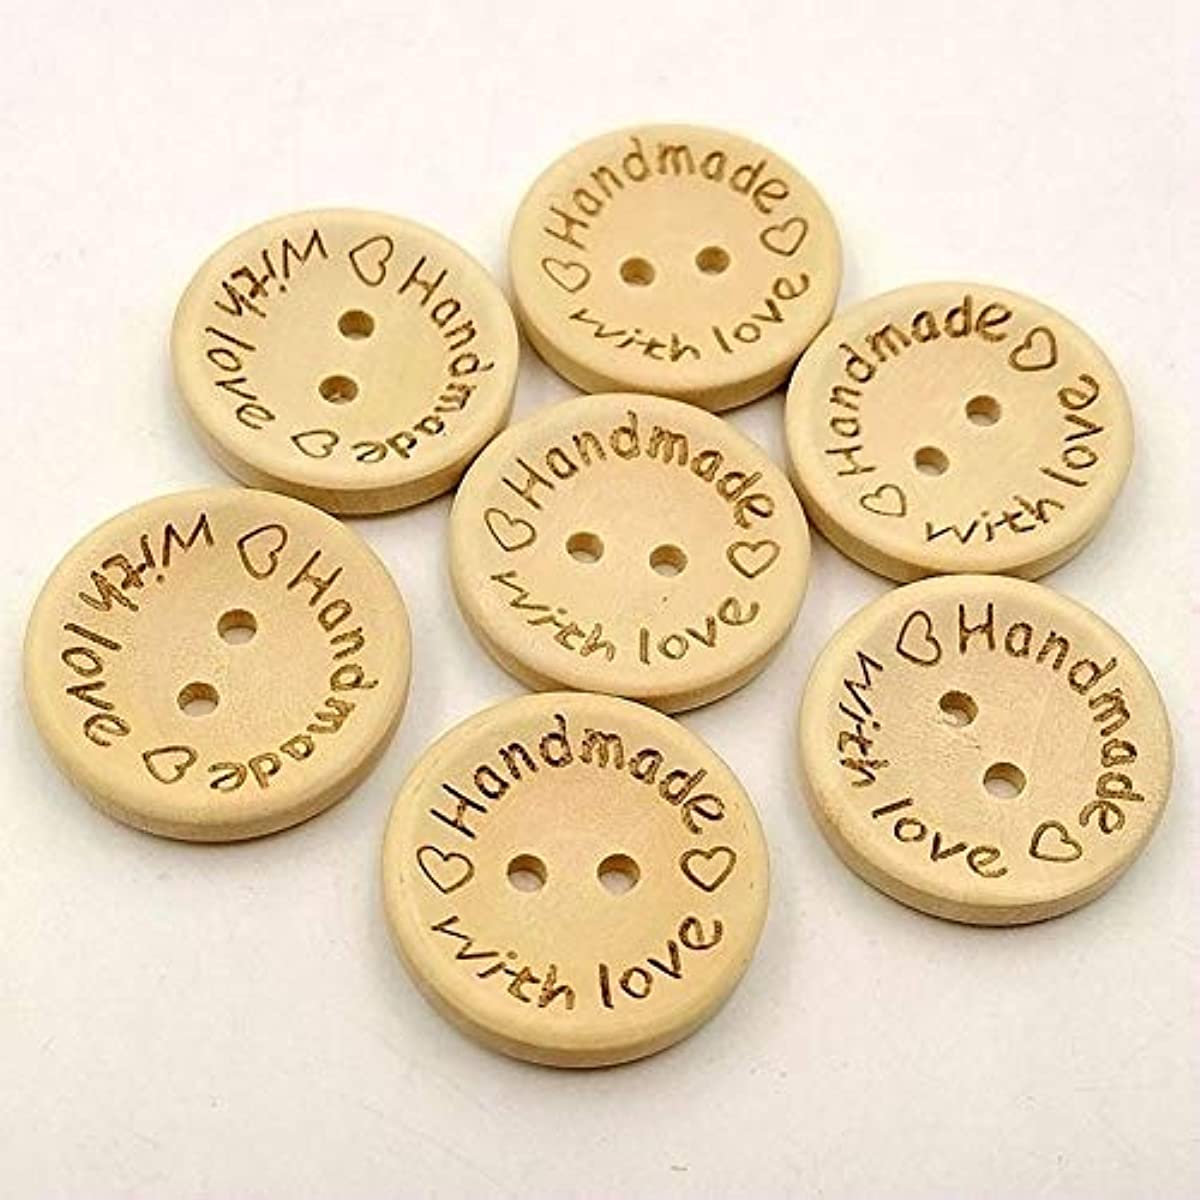 210 botones de madera impresos de 2 agujeros, botones temáticos de Pascua,  botones decorativos de madera para costura, álbumes de recortes, decoración